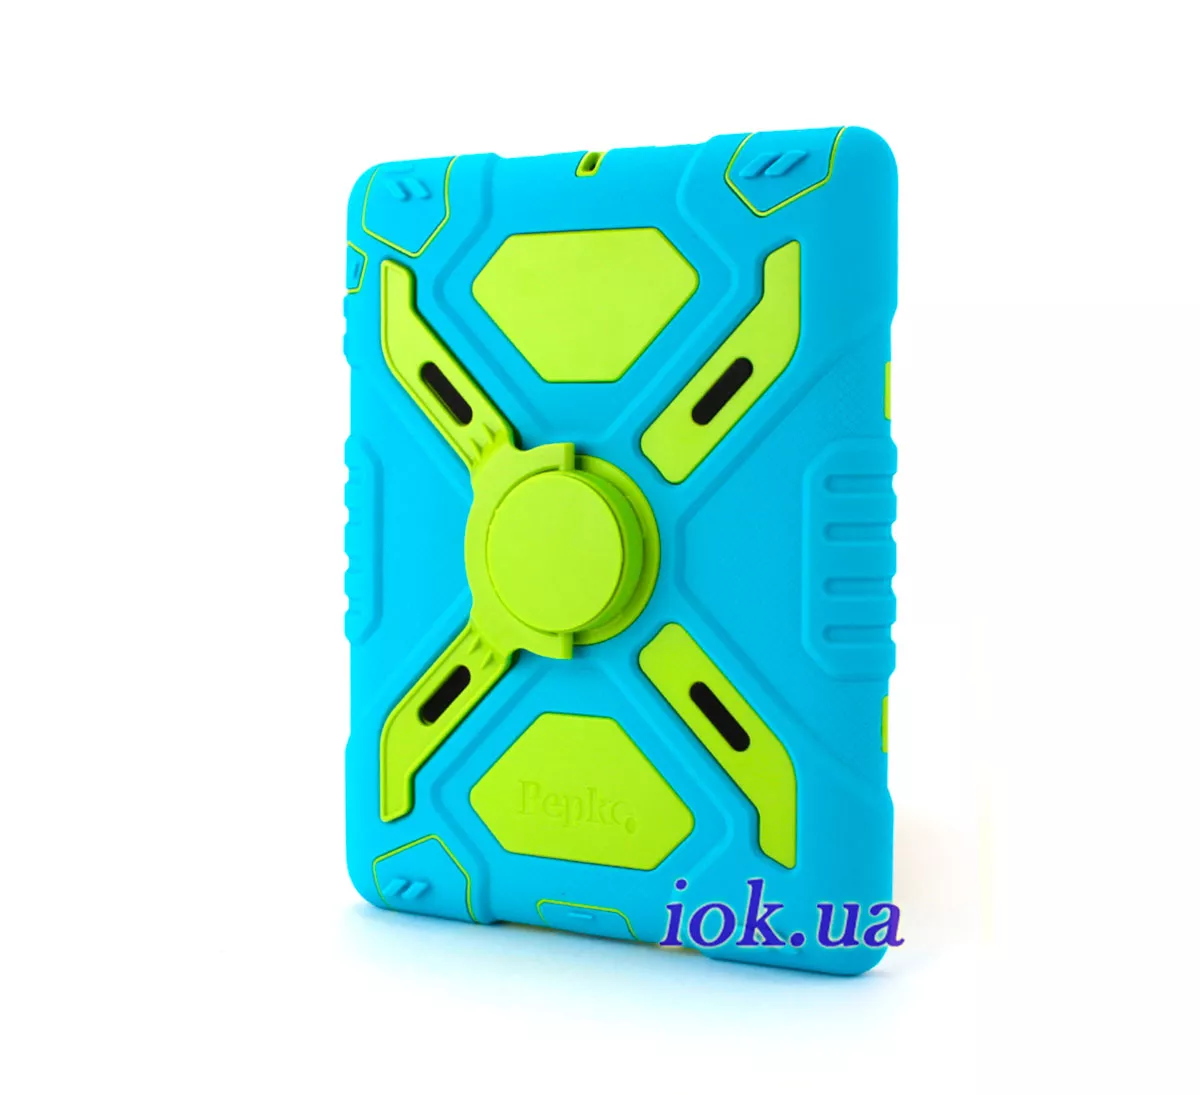 Противоударный чехол Pepkoo для iPad Air 2, голубой с зеленым